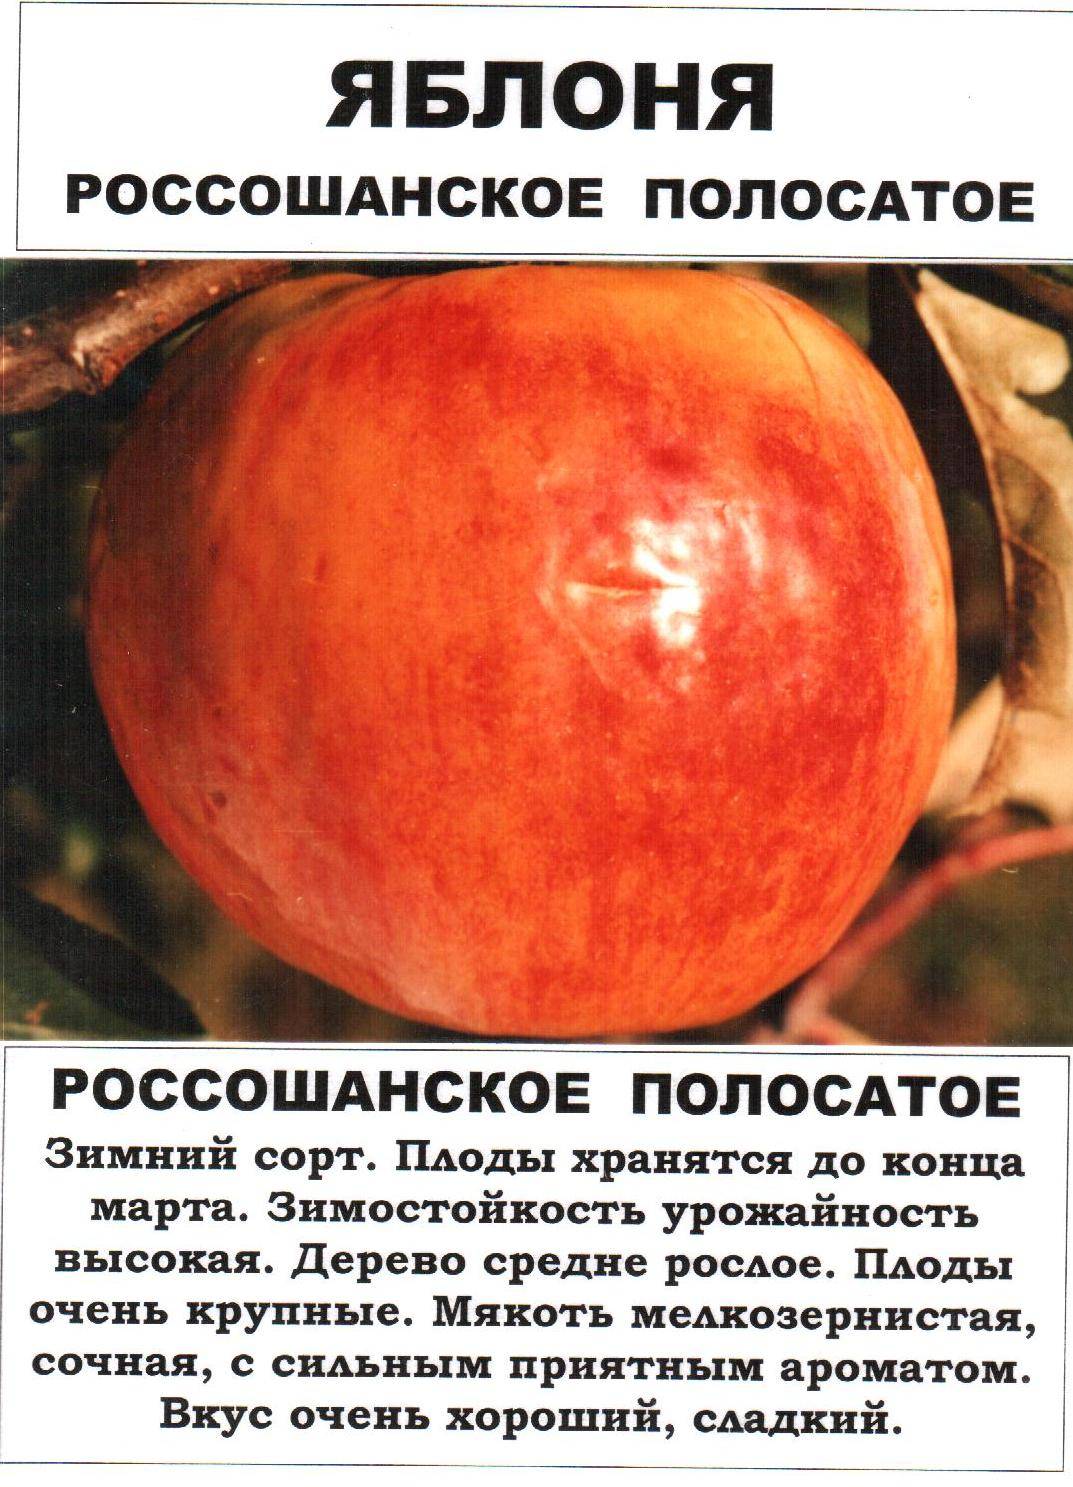 Особенности и описание яблони штрейфлинг